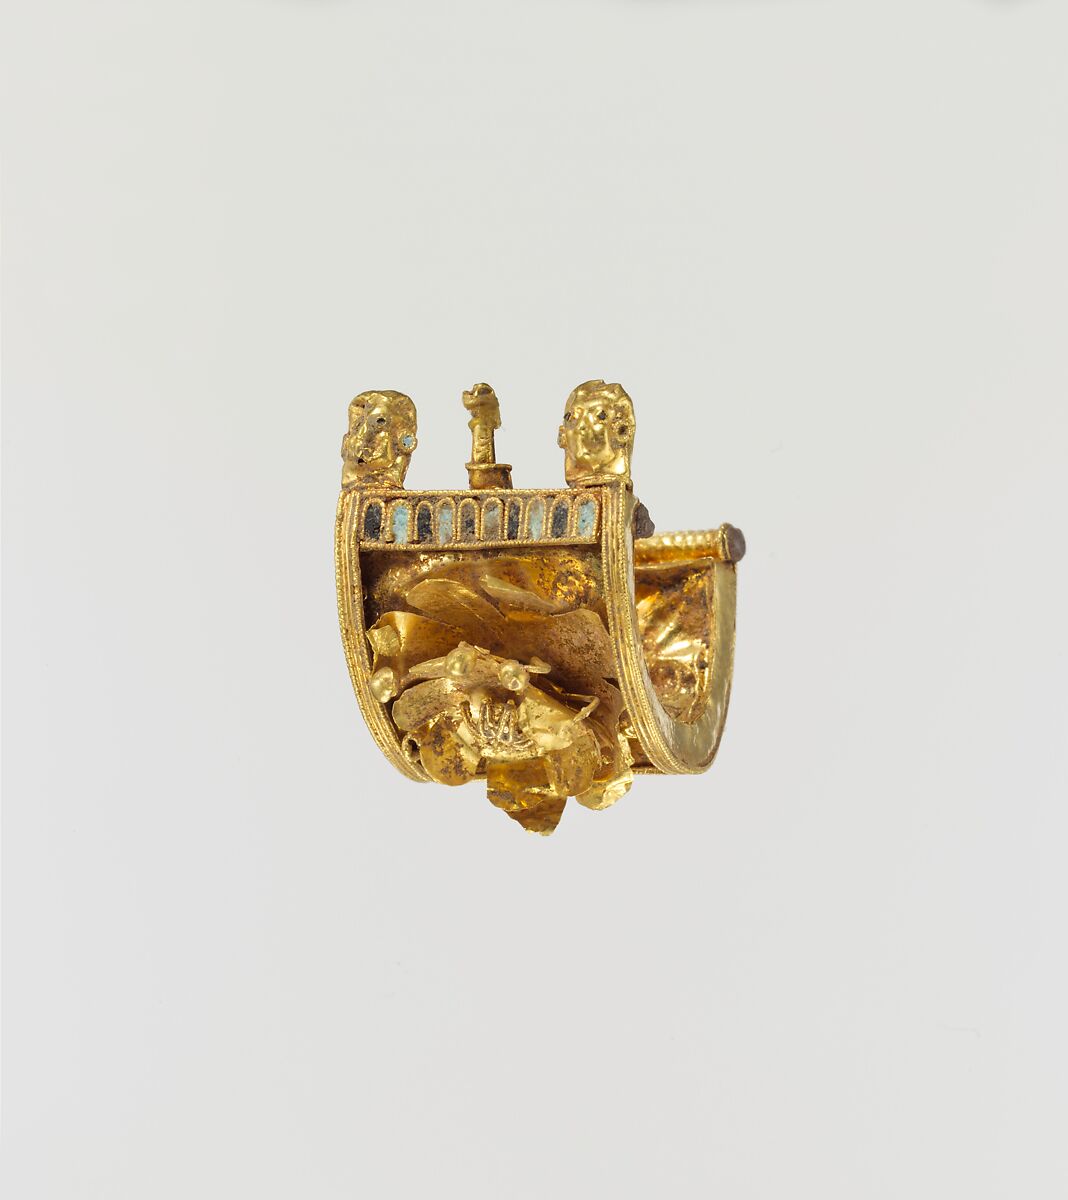 Gold and enamel a baule earring, Gold, enamel, Etruscan 